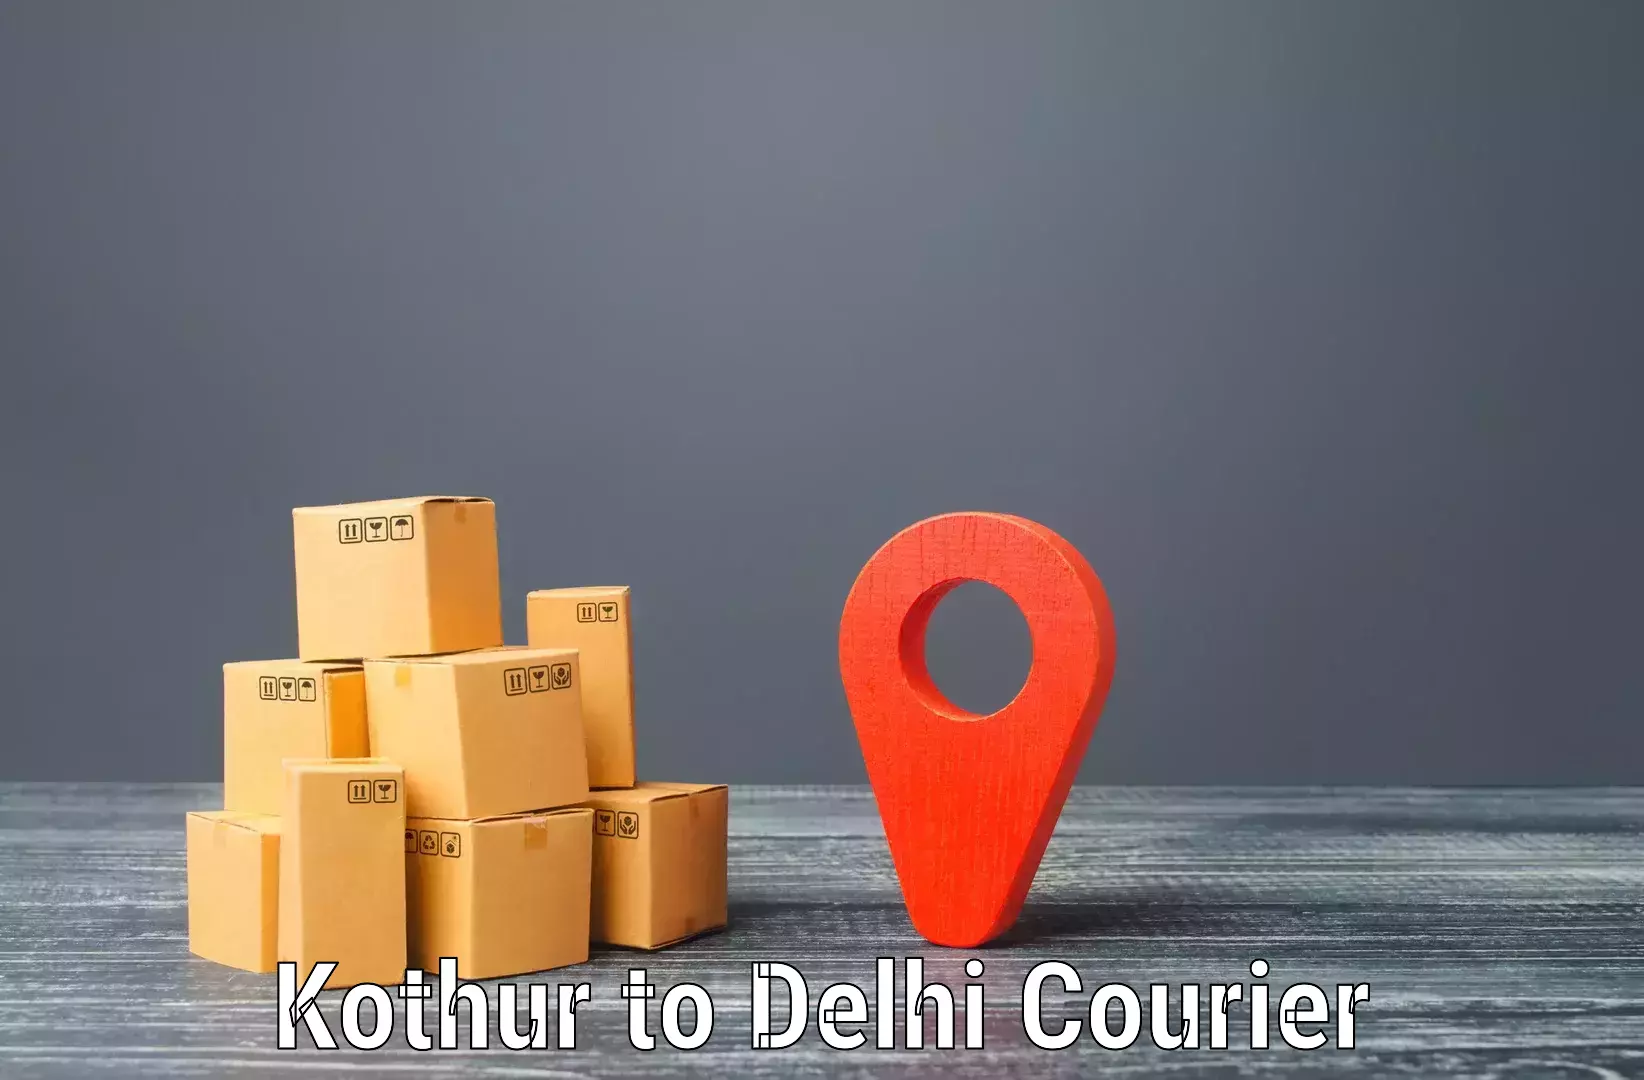 Automated parcel services Kothur to Jhilmil